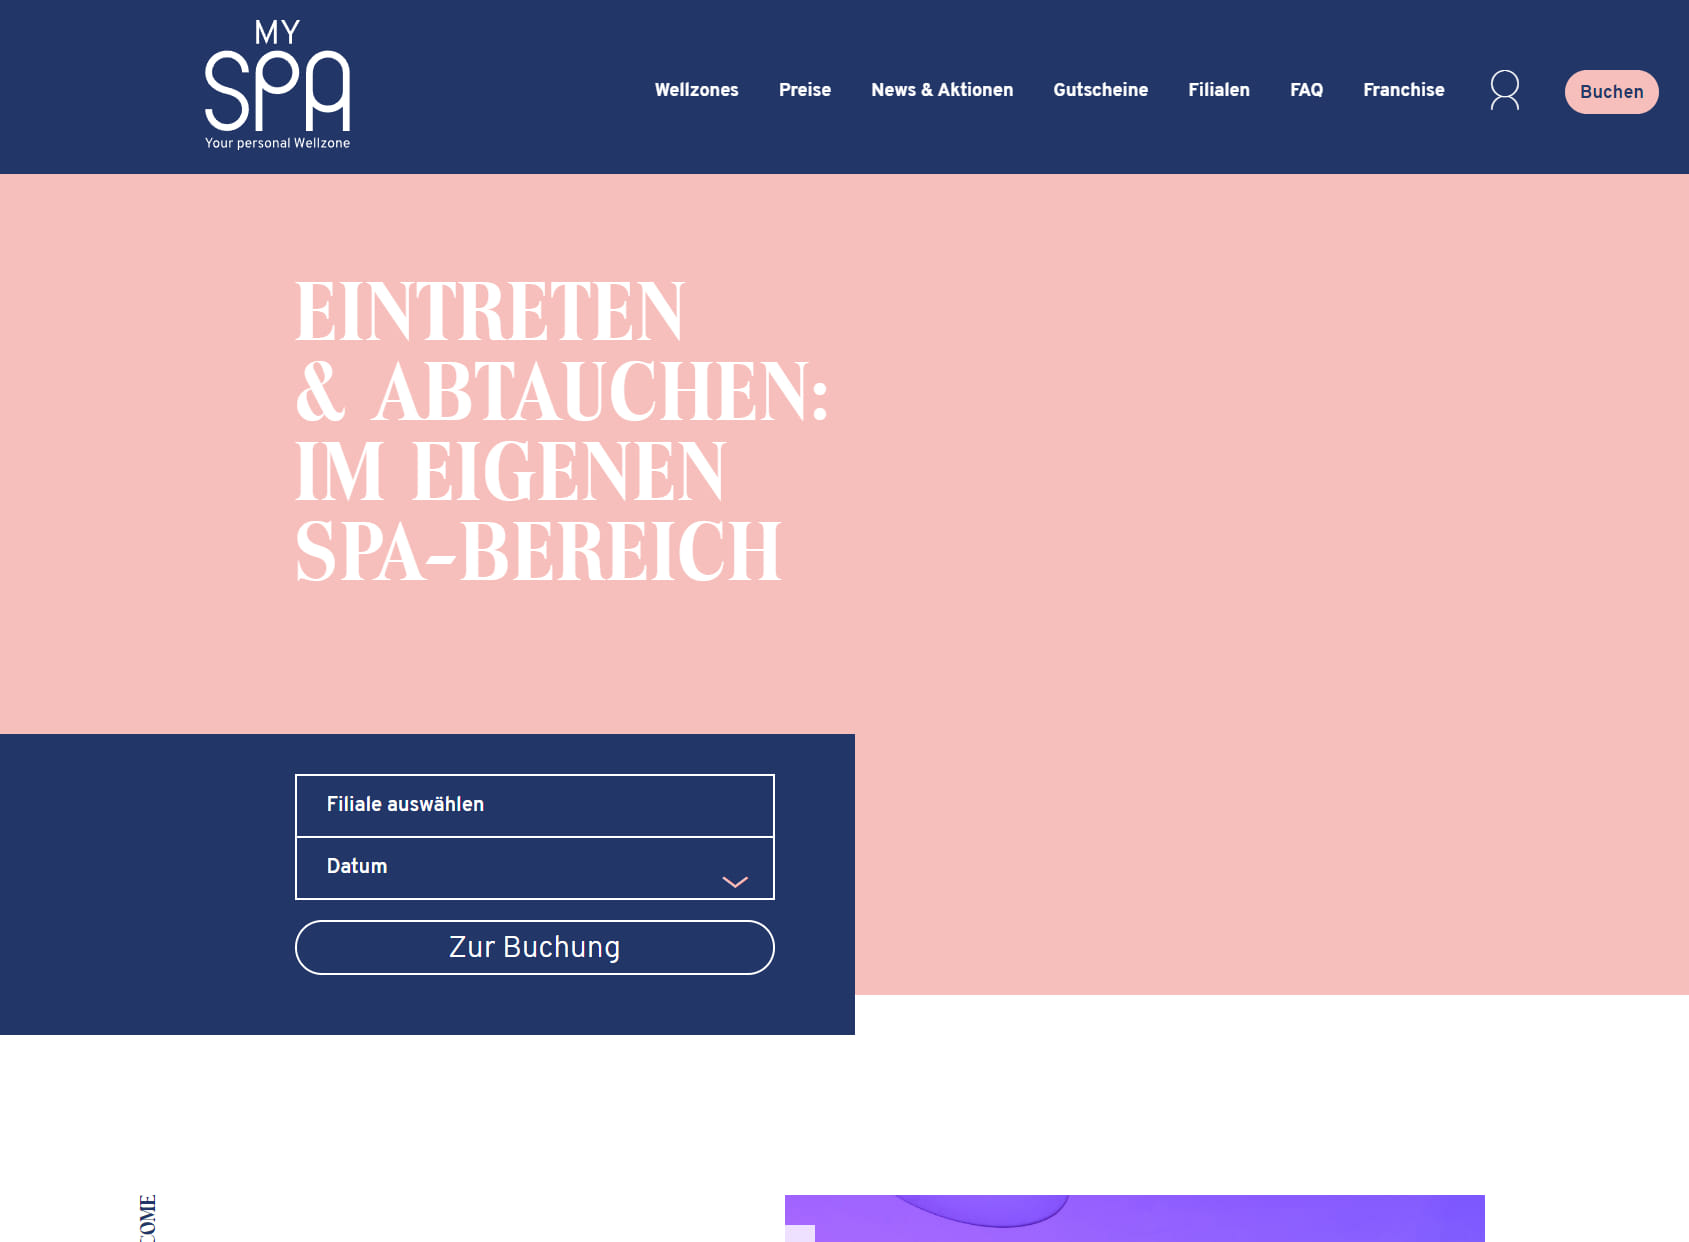 MySpa - Your personal Wellzone I Wellness & Spa in Mainz